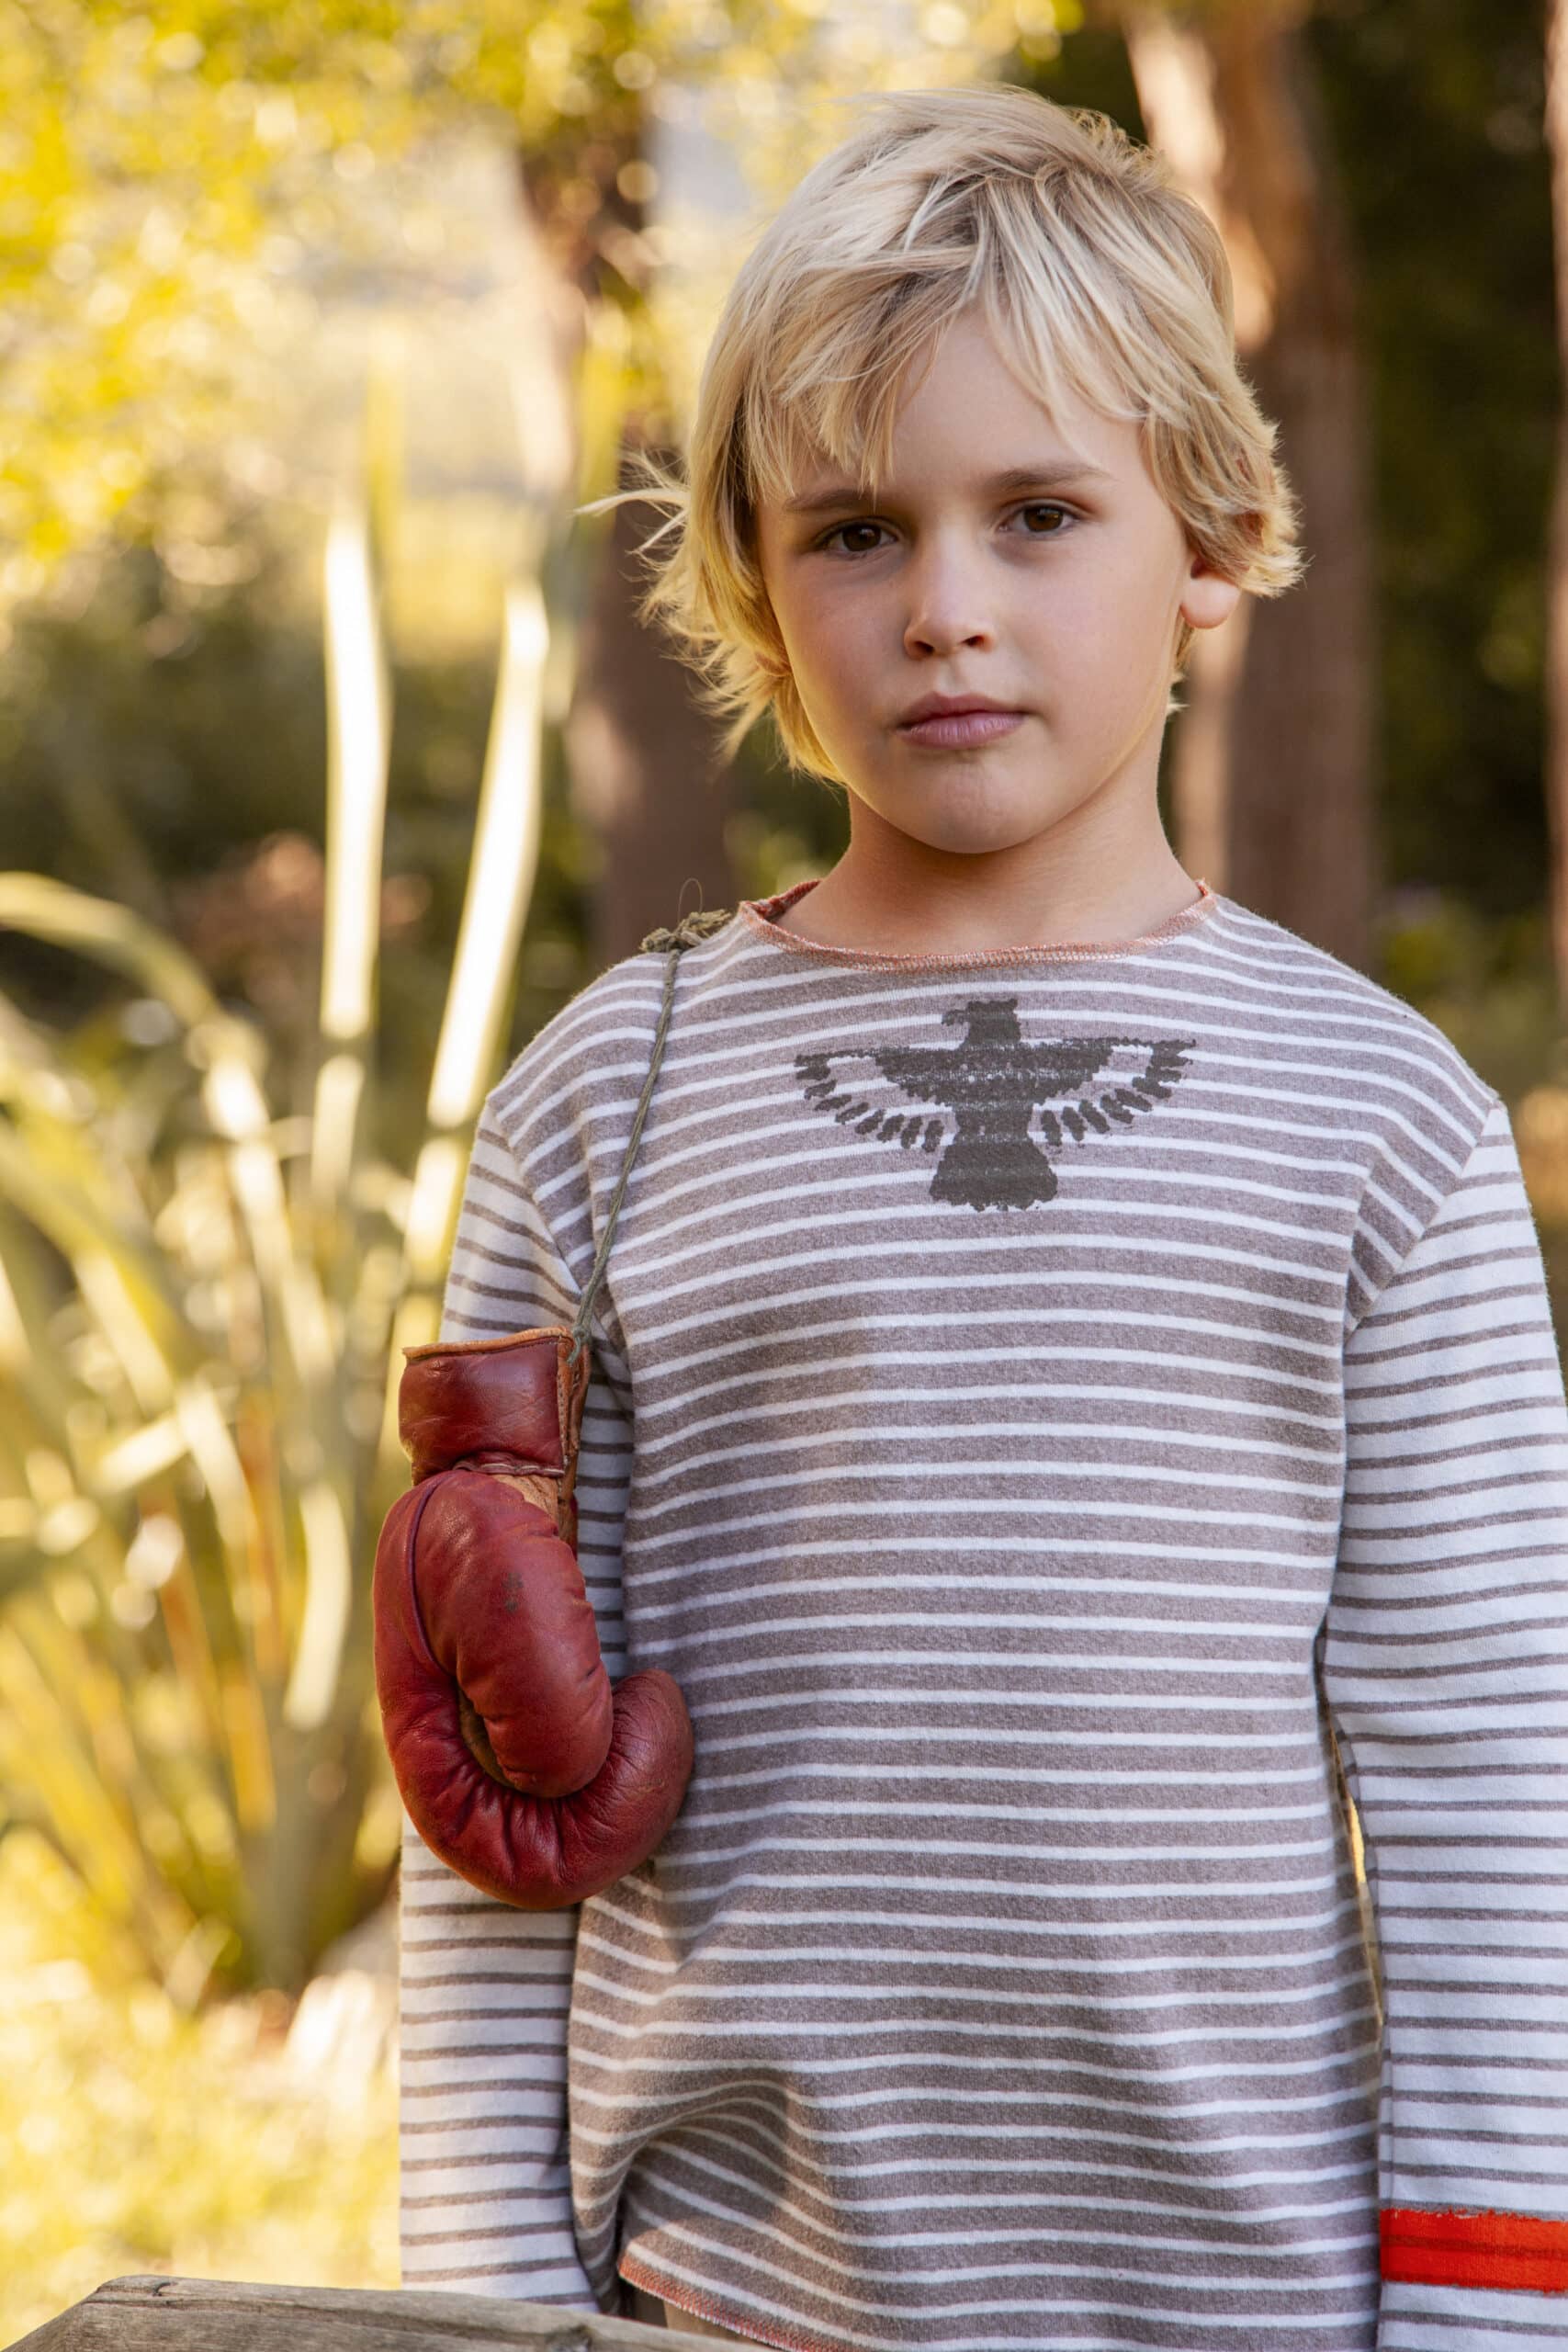 Ein kleiner Junge mit blondem Haar steht im Freien, hält einen roten Falknerhandschuh und trägt ein grau gestreiftes Hemd mit Falkenaufdruck. Im Hintergrund Laub und sanftes Sonnenlicht. © Fotografie Tomas Rodriguez